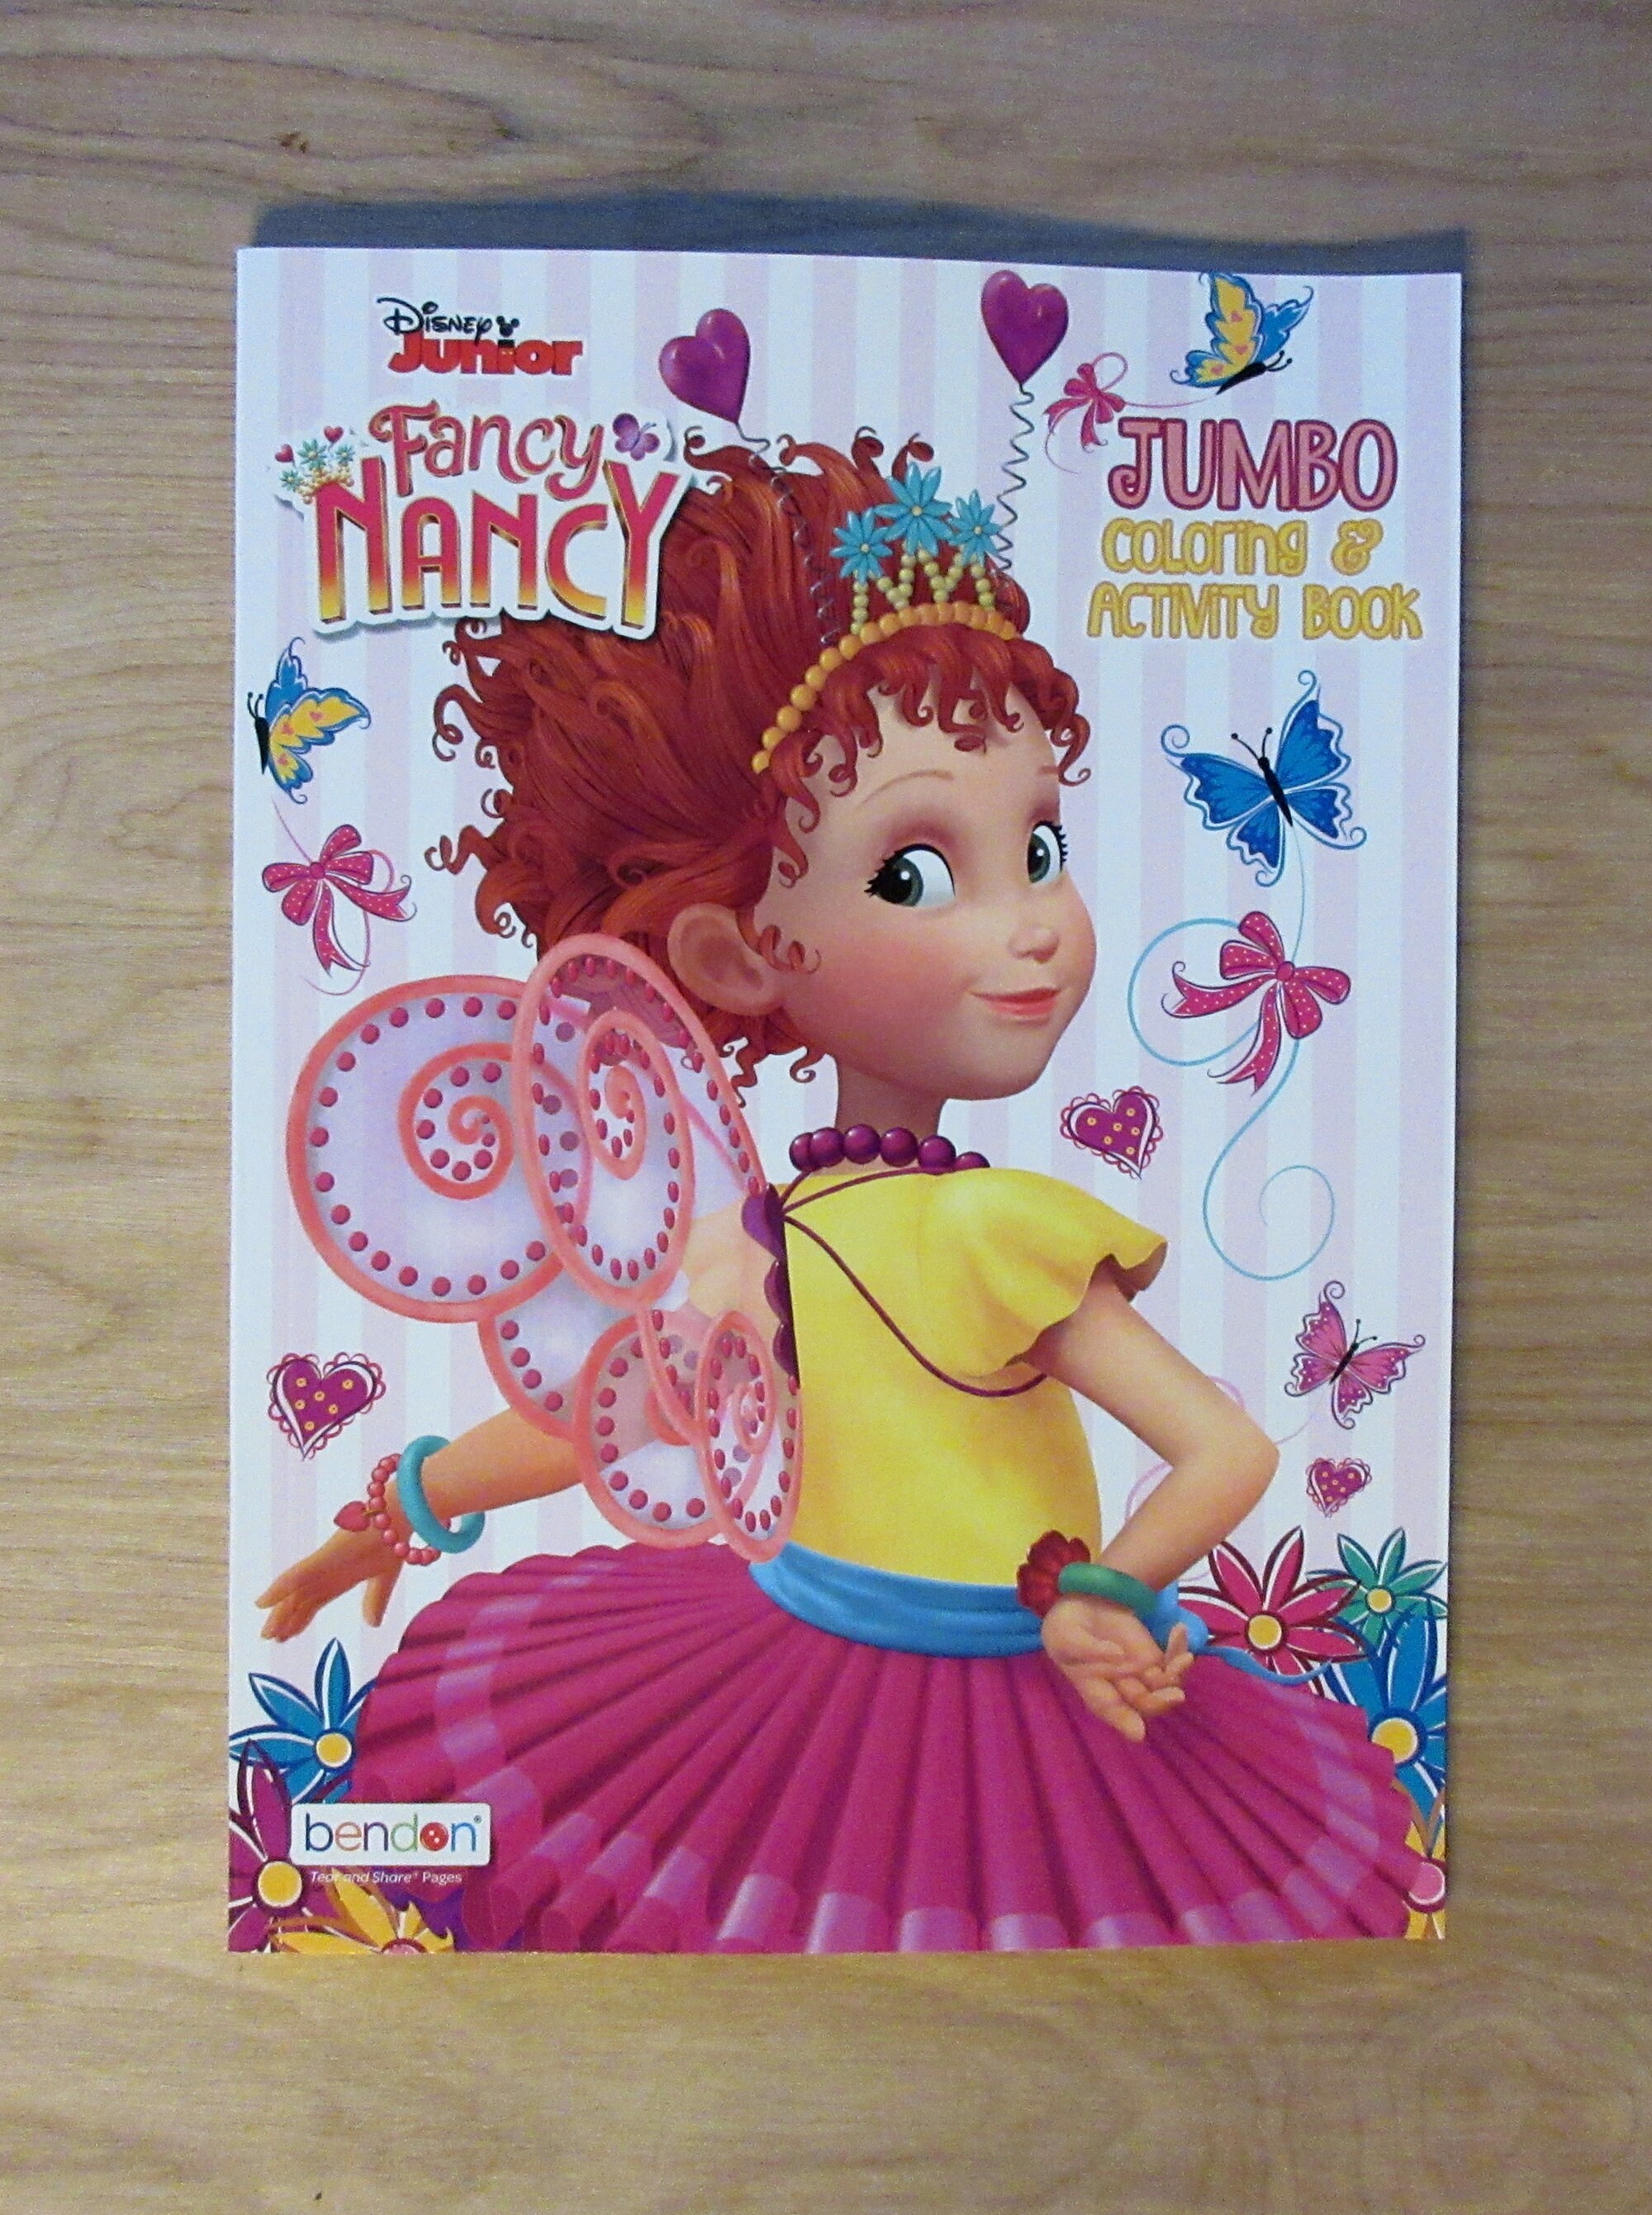 Disney Junior Fancy Nancy Jumbo Coloring Book & Activity Bookjewel